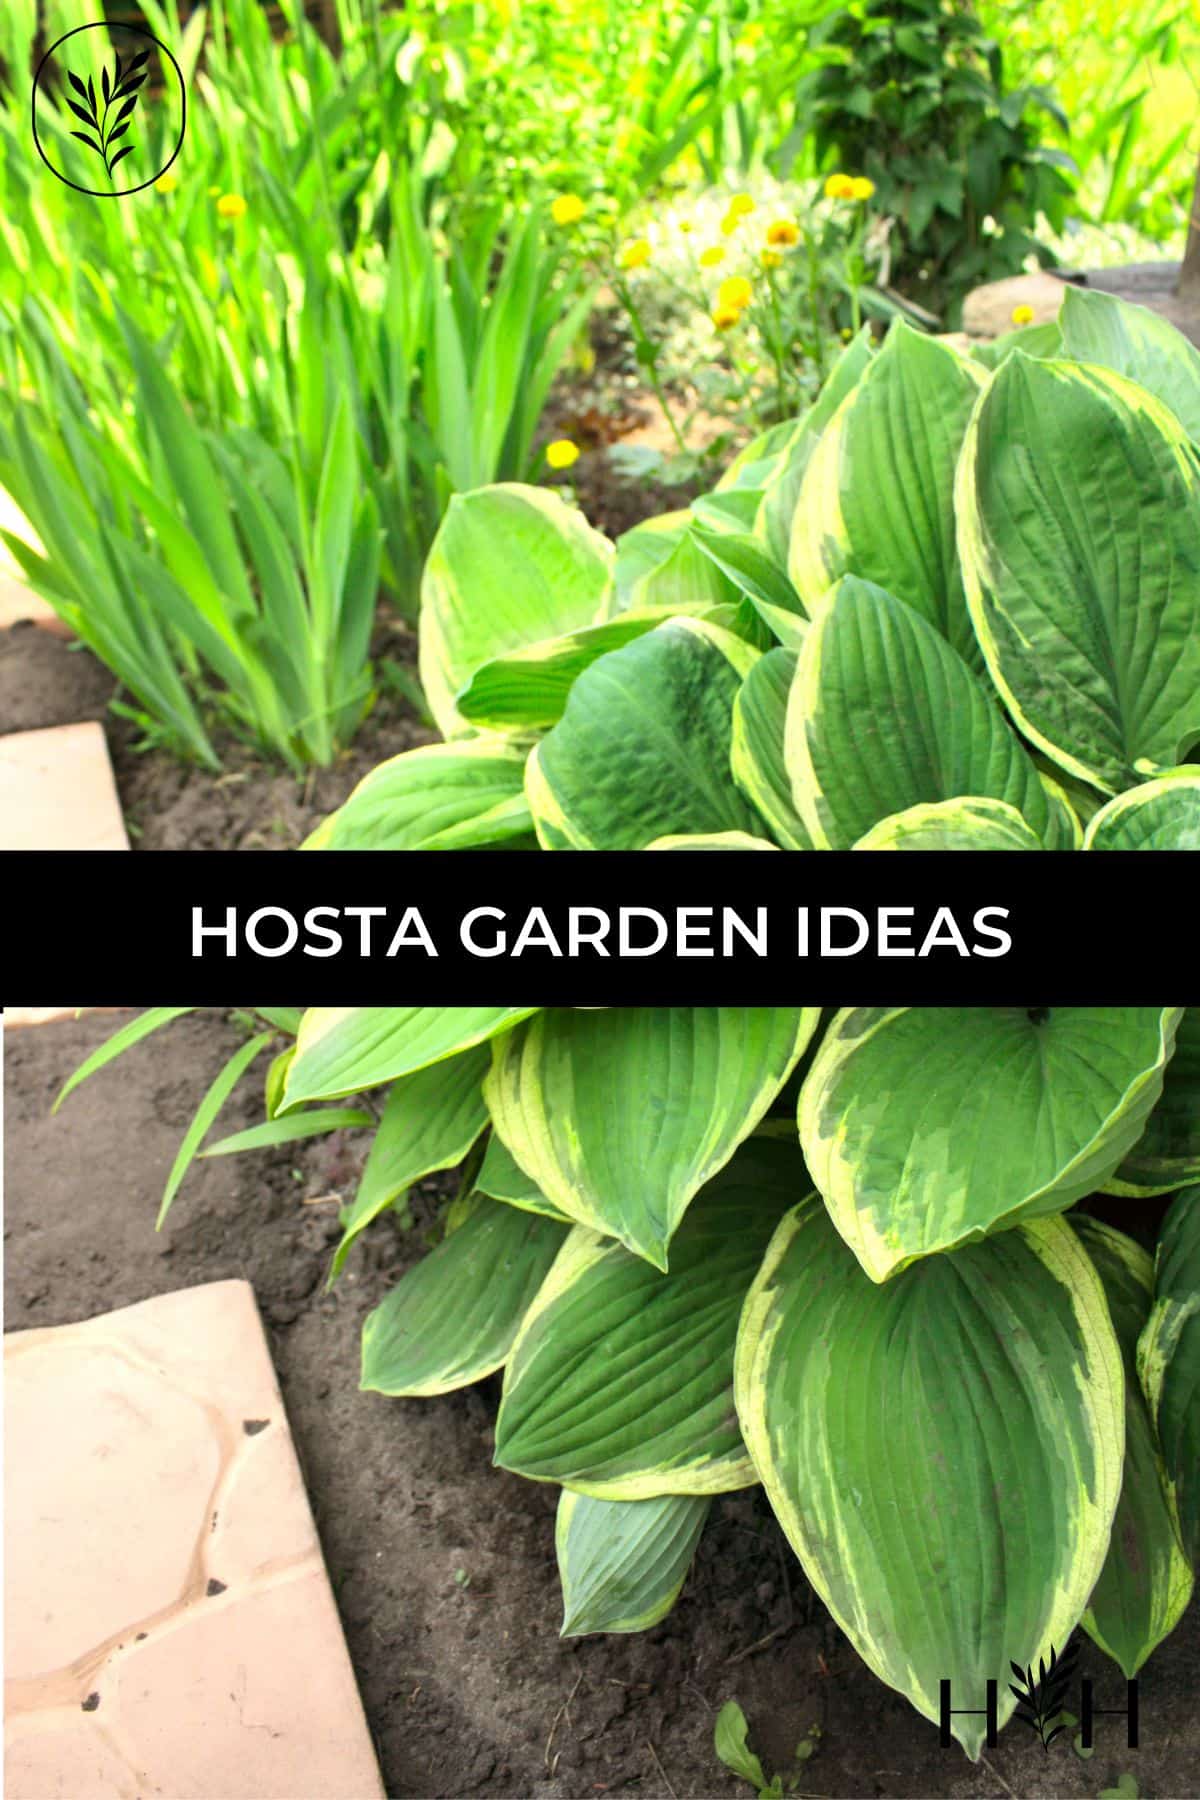 Hosta garden ideas via @home4theharvest